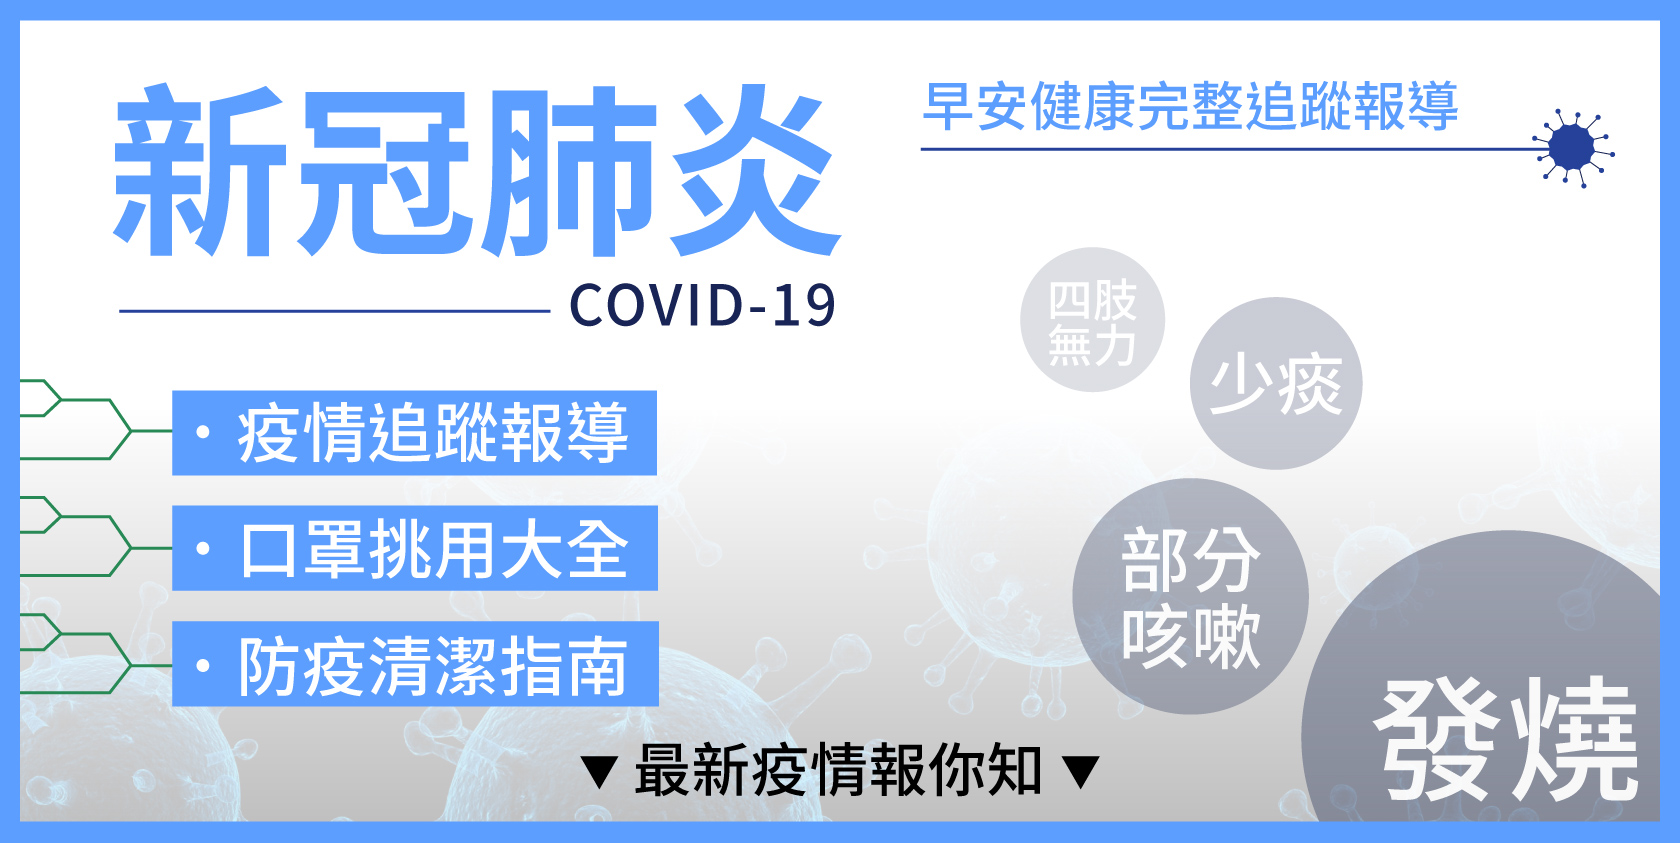 COVID-19疫情追蹤、預防保健資訊專區